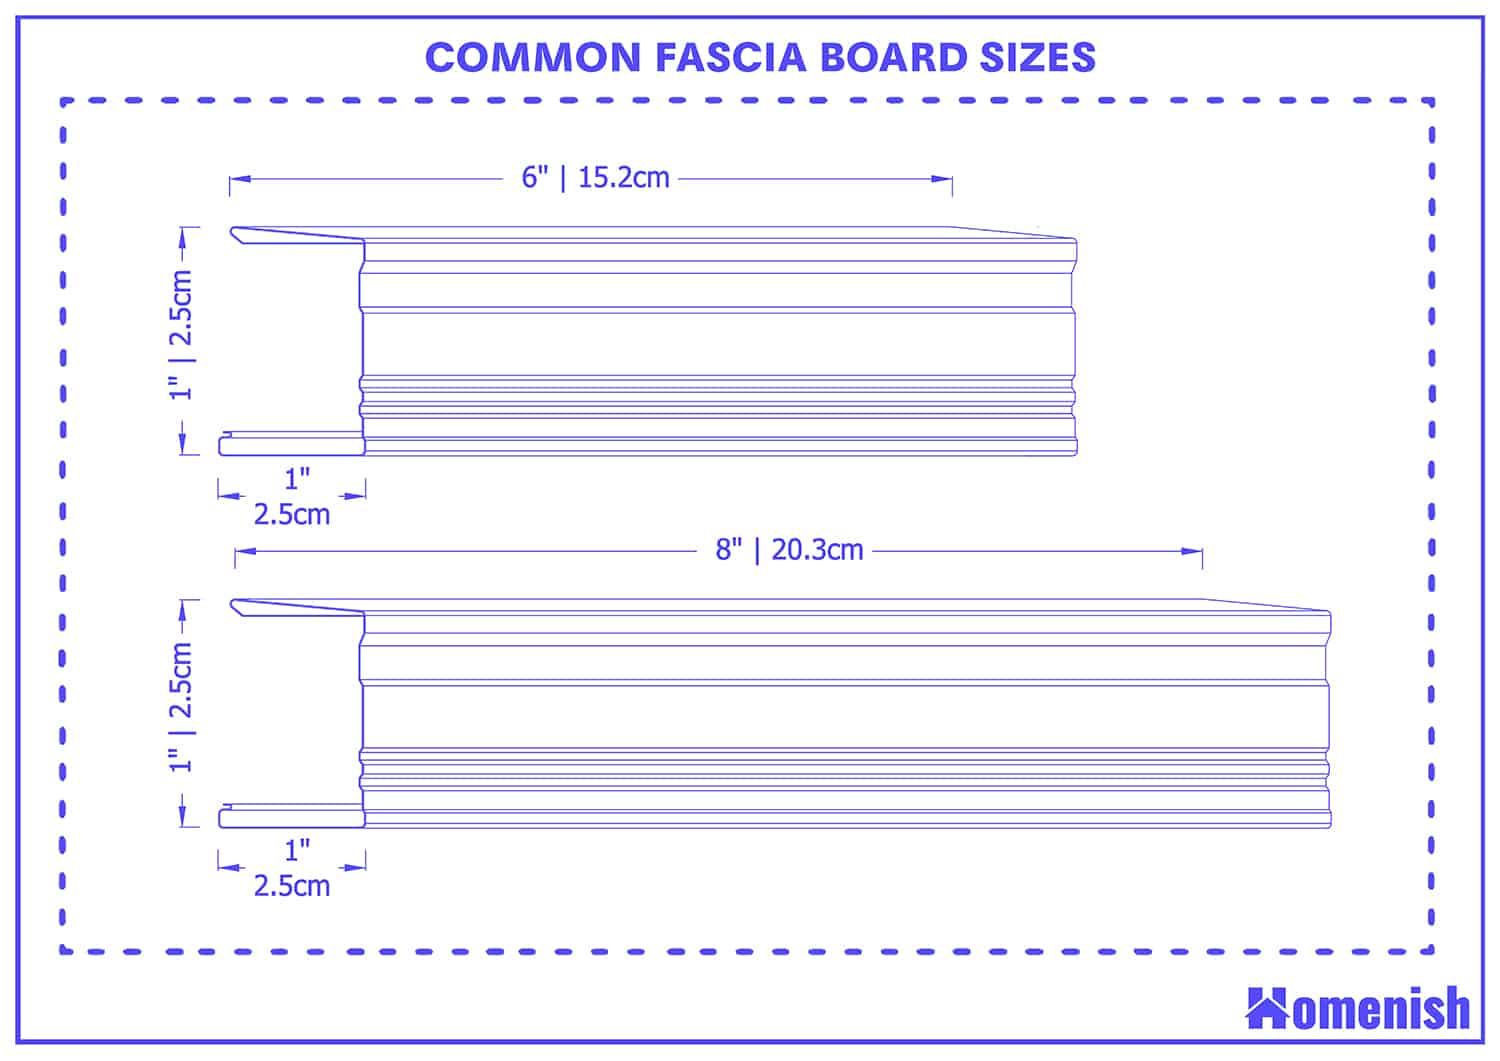 Common fascia board sizes